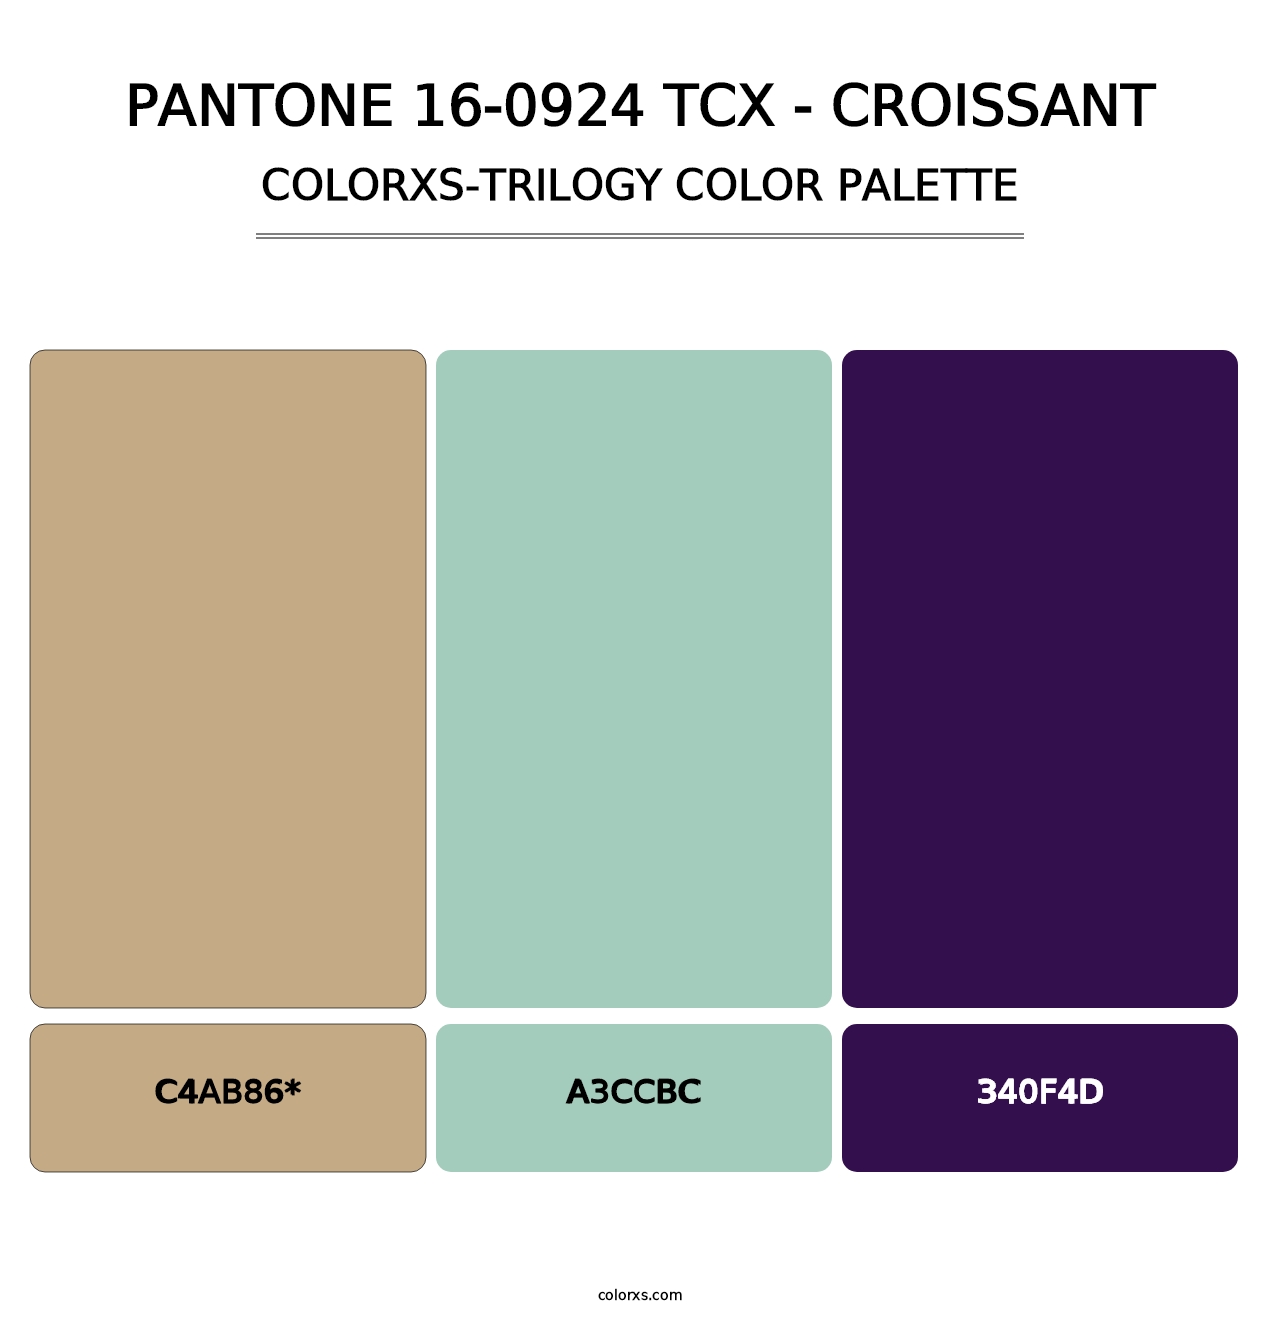 PANTONE 16-0924 TCX - Croissant - Colorxs Trilogy Palette